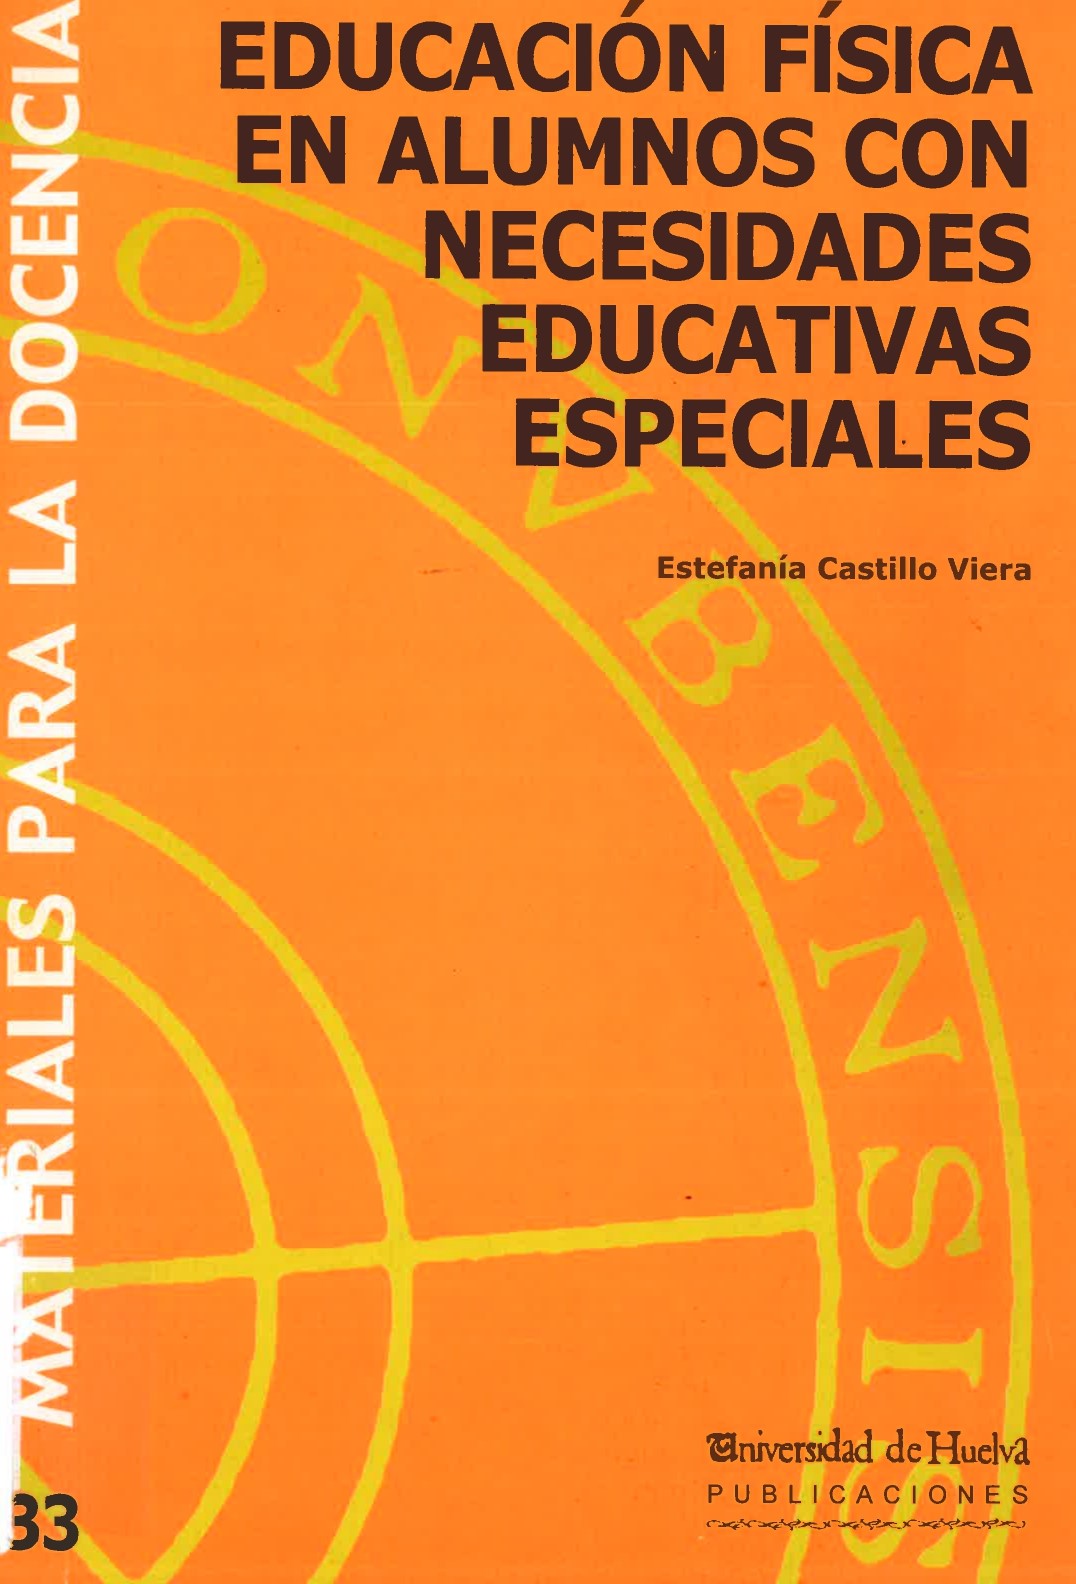 Imagen de portada del libro Educación física en alumnos con necesidades educativas especiales